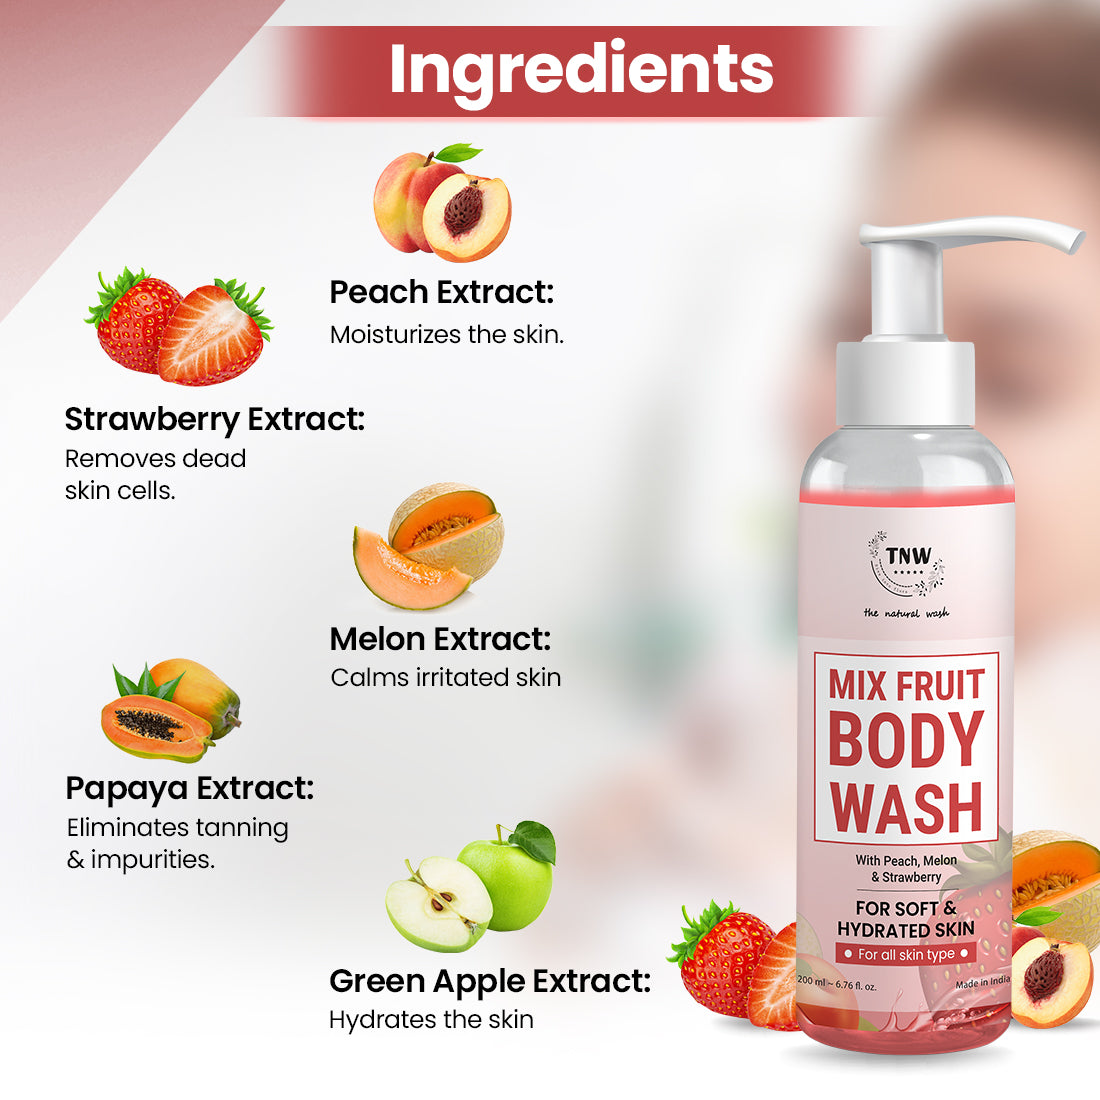 Mix Fruit Body Wash